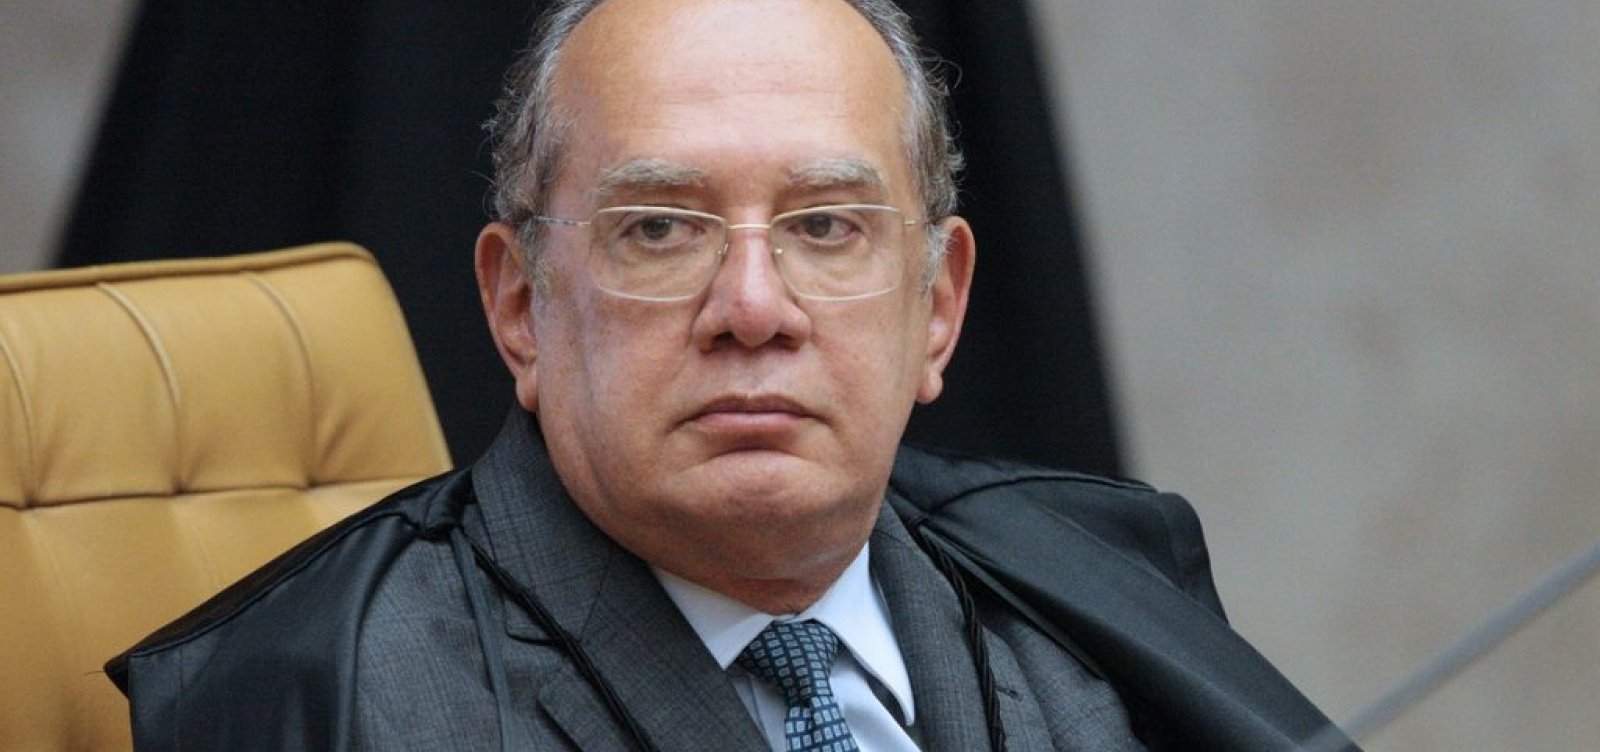 Instituições devem ser honradas, diz ministro após Bolsonaro divulgar vídeo de apoio a ato